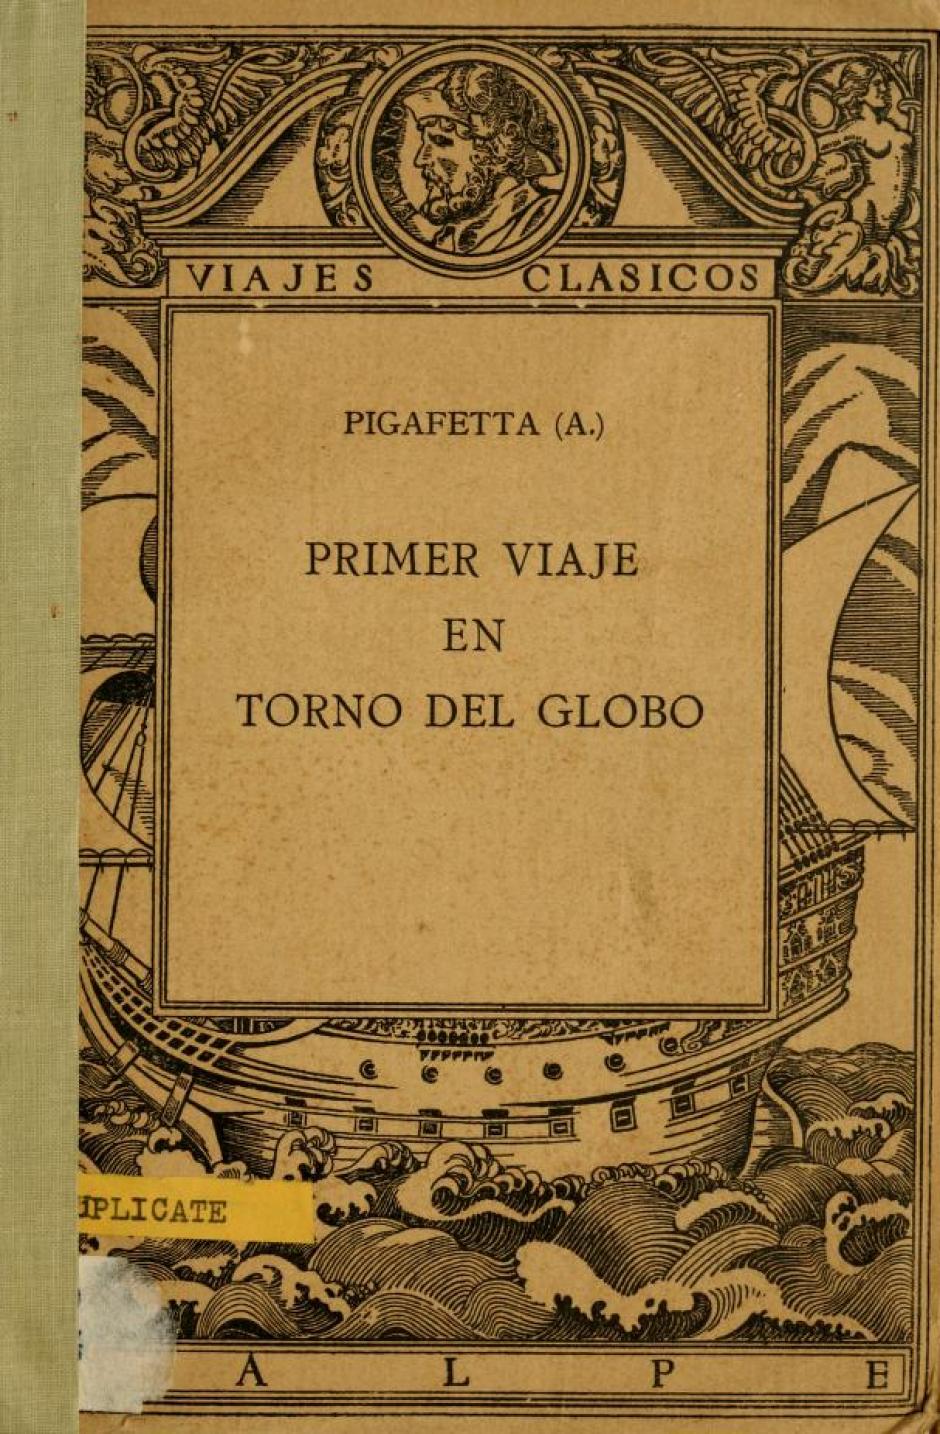 Edición de 1922 del Primer viaje en torno del globo